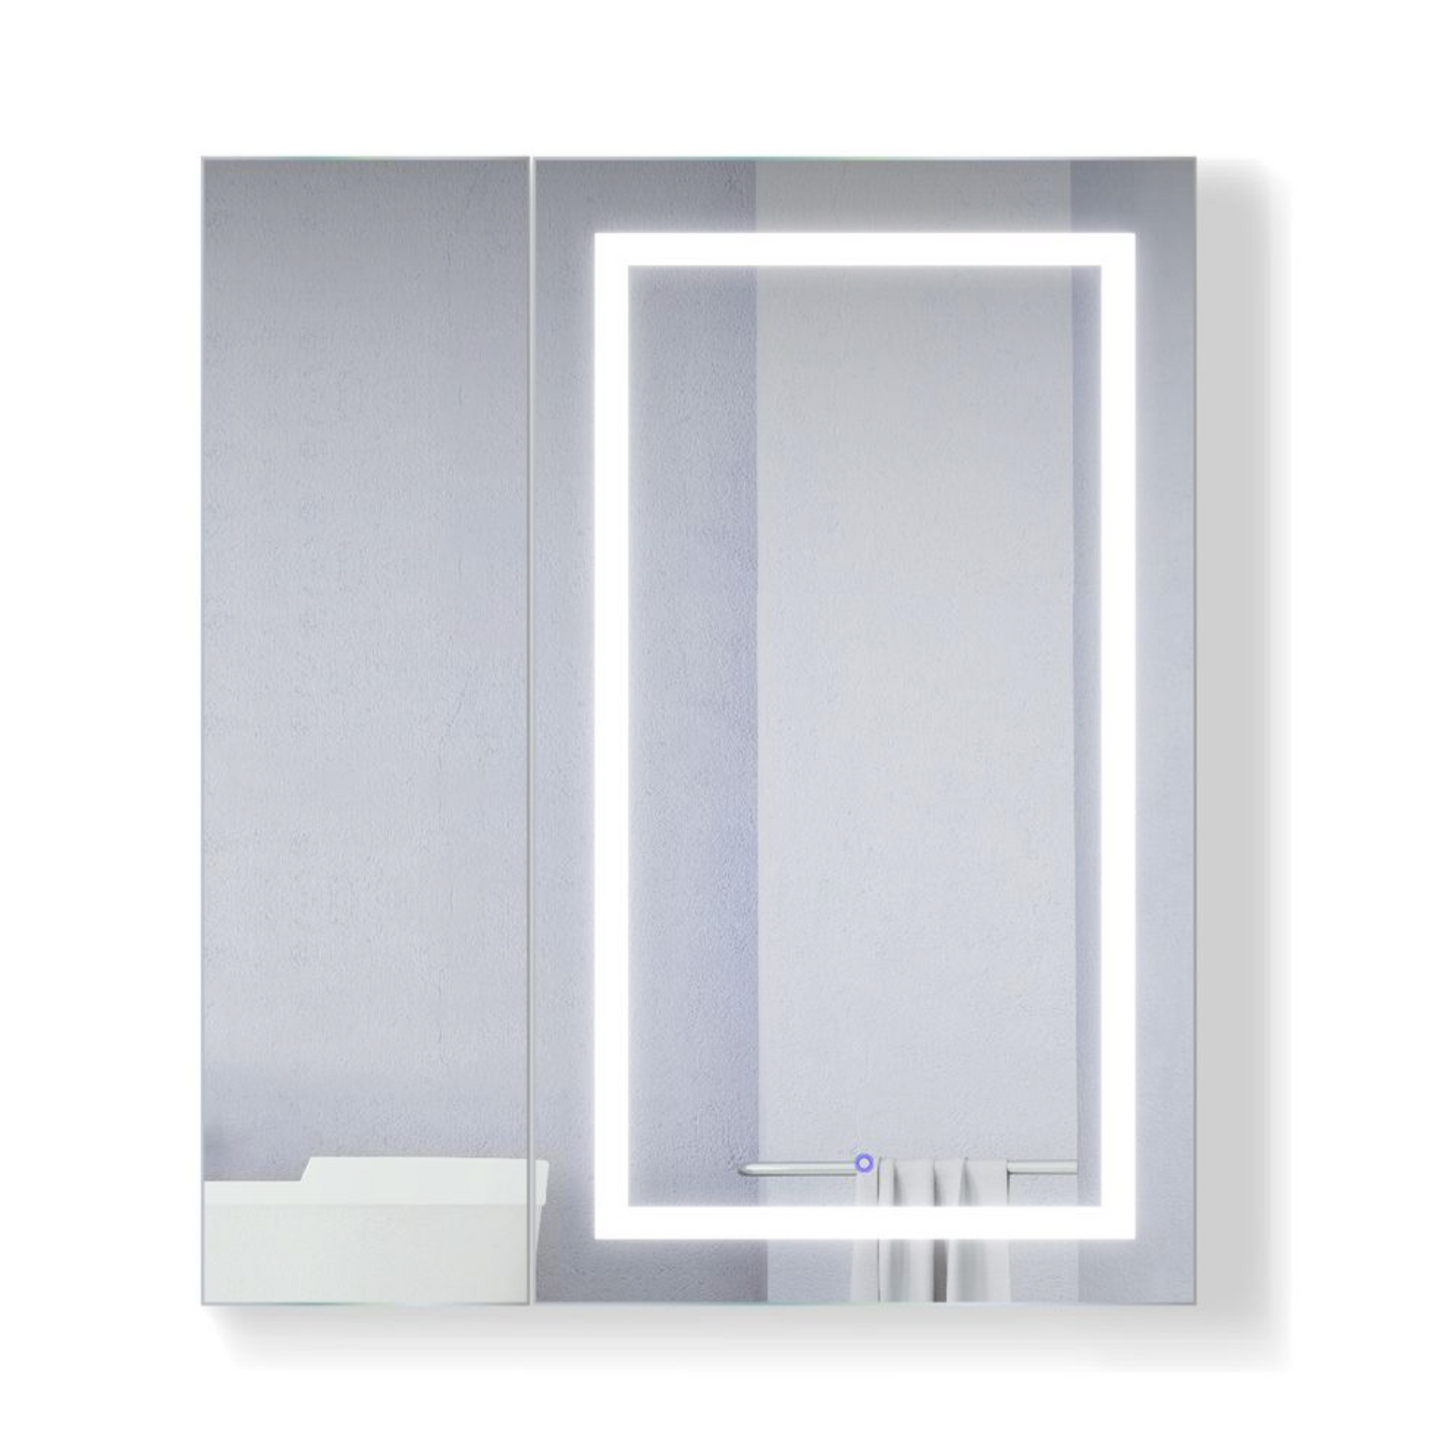 SVANGE 36 X 42 LED Two Door  Lighted Mirror Medicine Cabinet, Defogger included